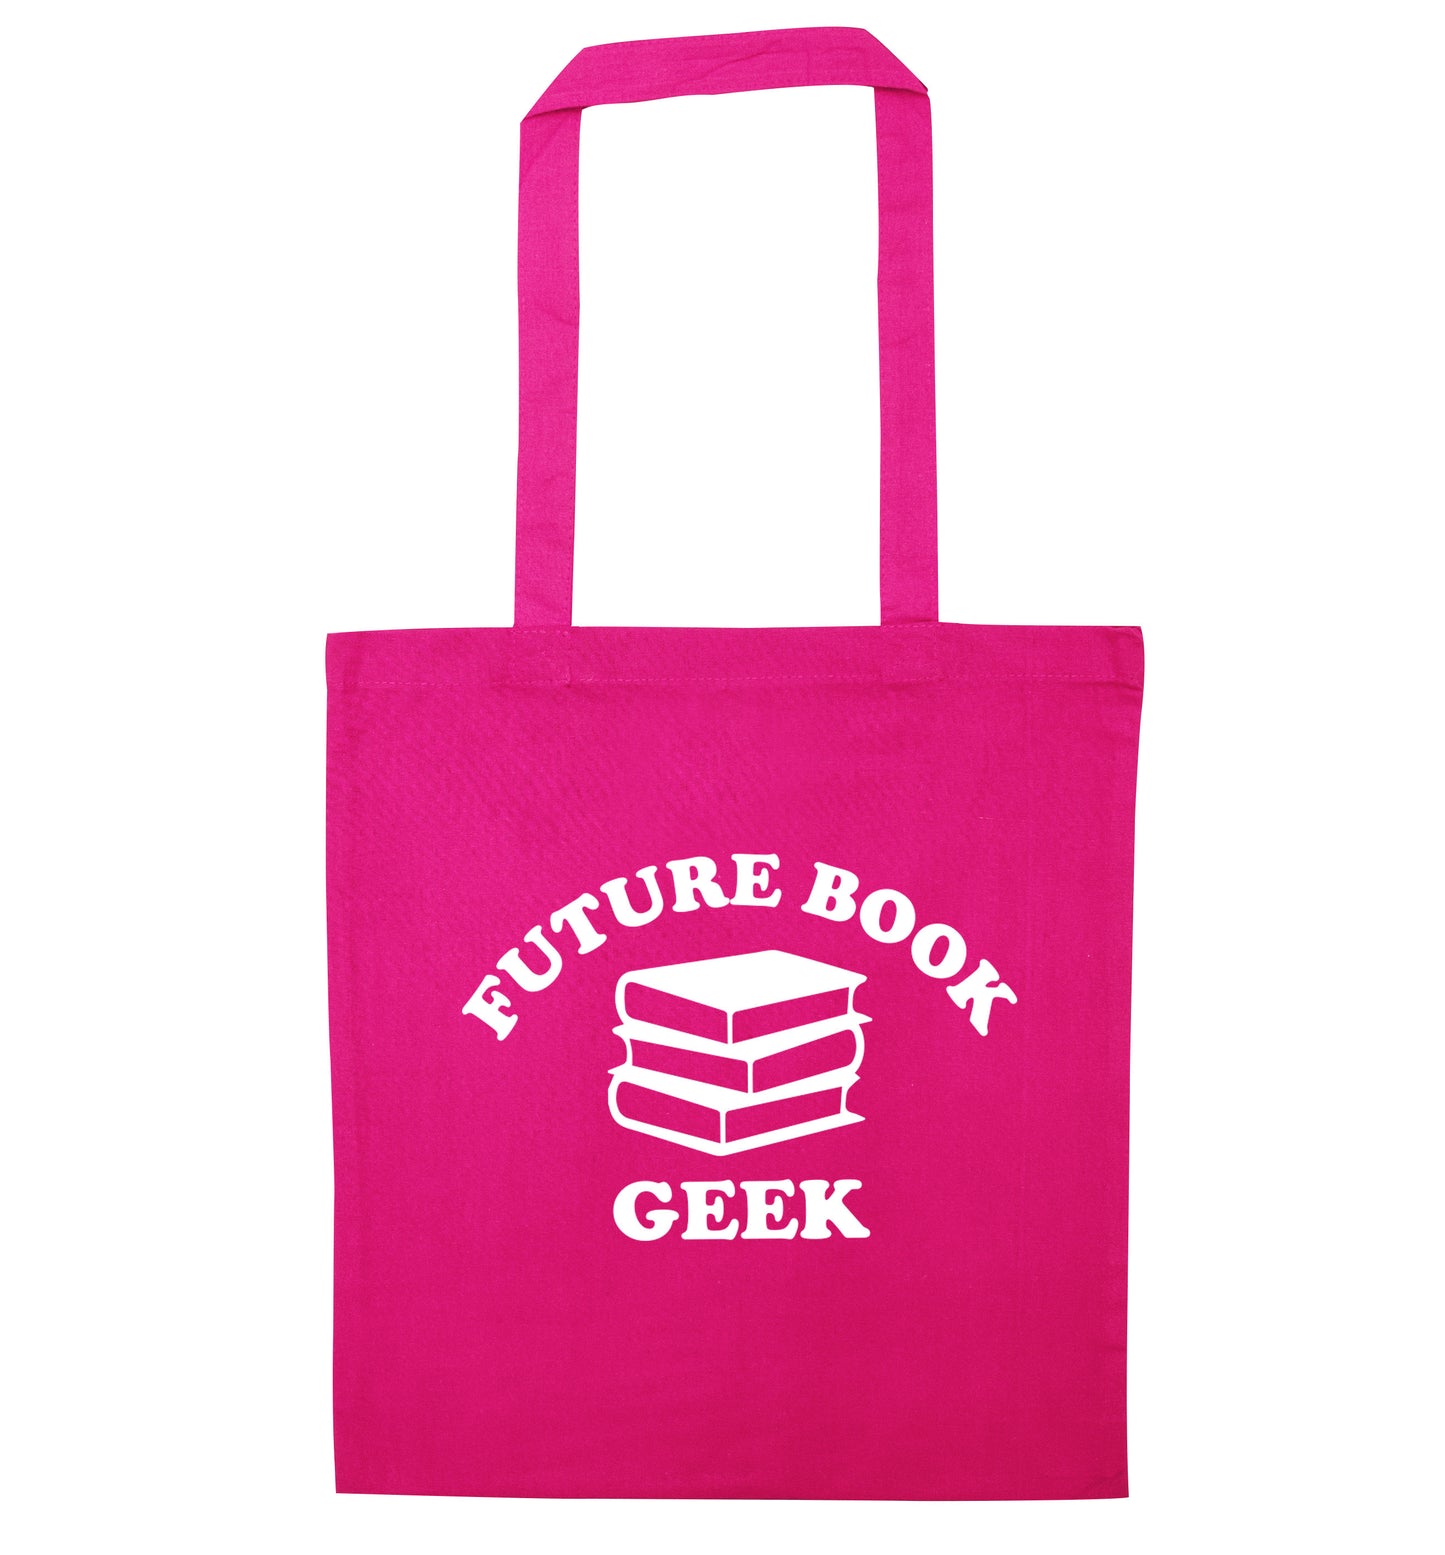 Future book geek pink tote bag